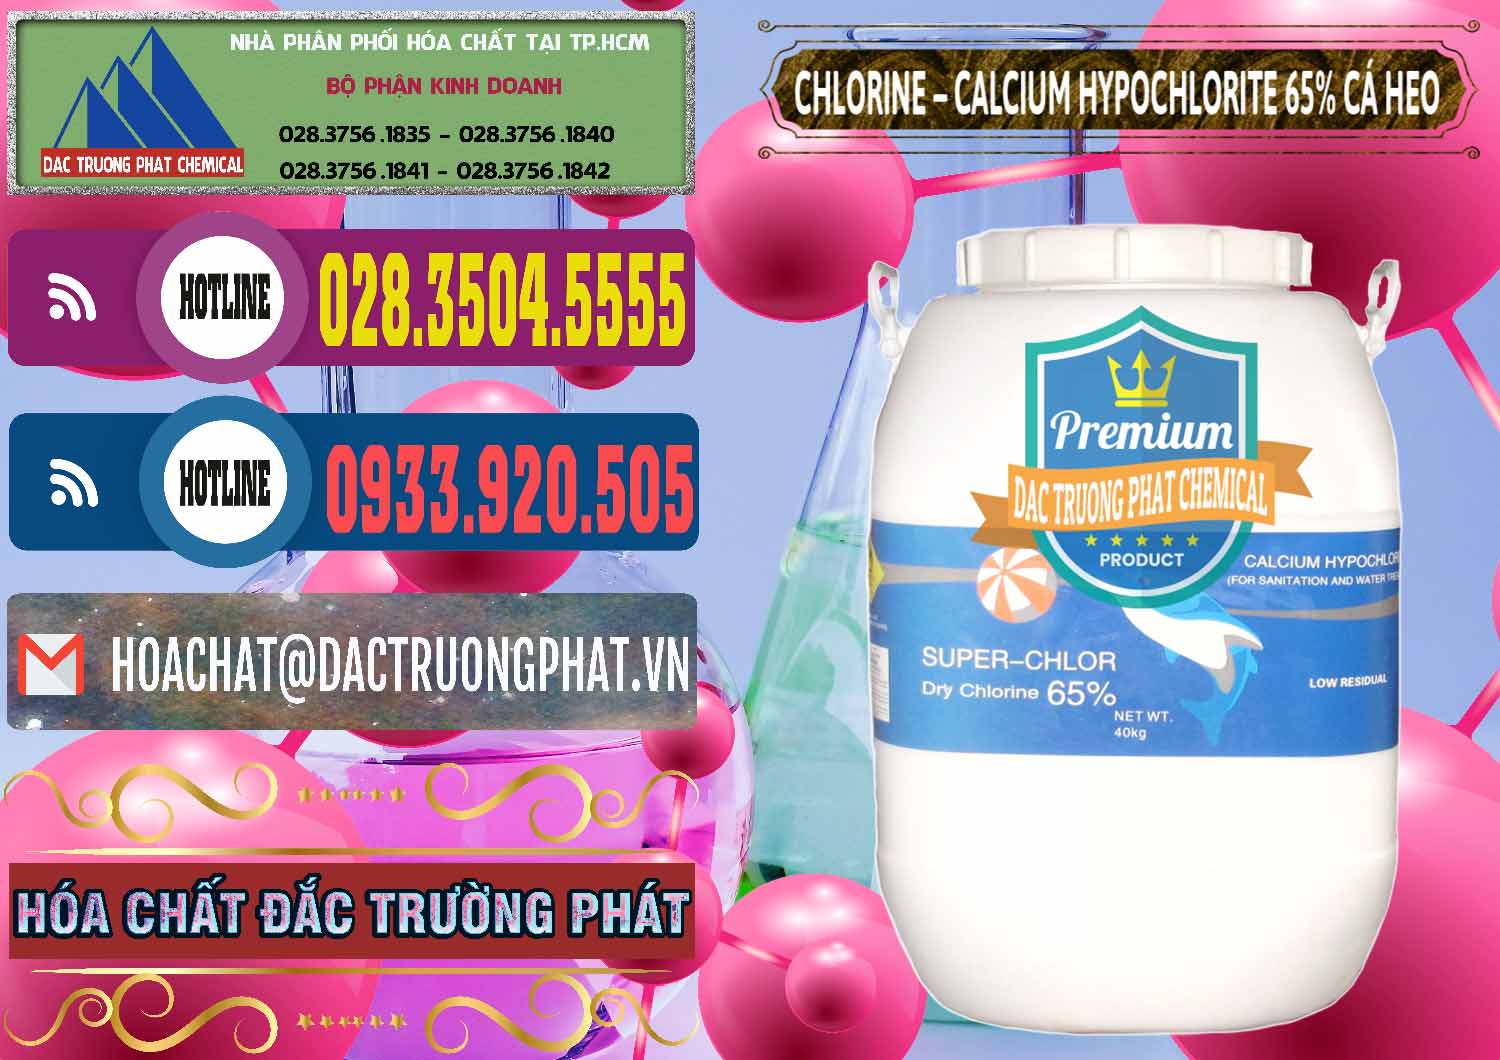 Nơi chuyên bán ( cung ứng ) Clorin - Chlorine Cá Heo 65% Trung Quốc China - 0053 - Cty chuyên cung cấp _ kinh doanh hóa chất tại TP.HCM - muabanhoachat.com.vn